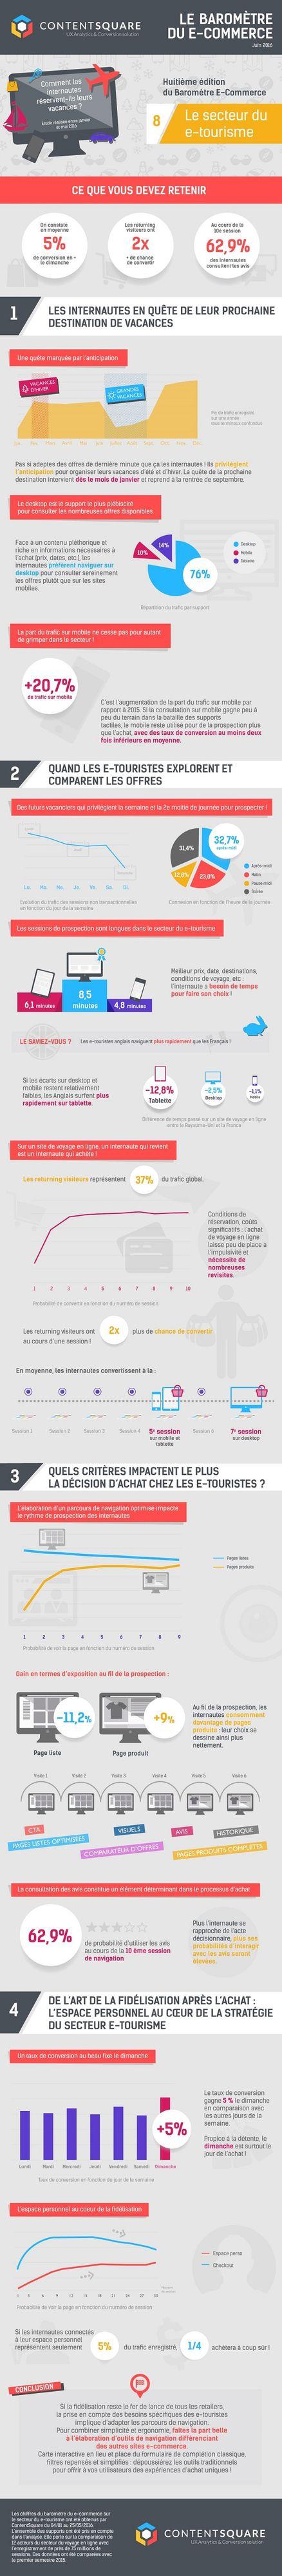 ContentSquare – Infographie e-tourisme en France